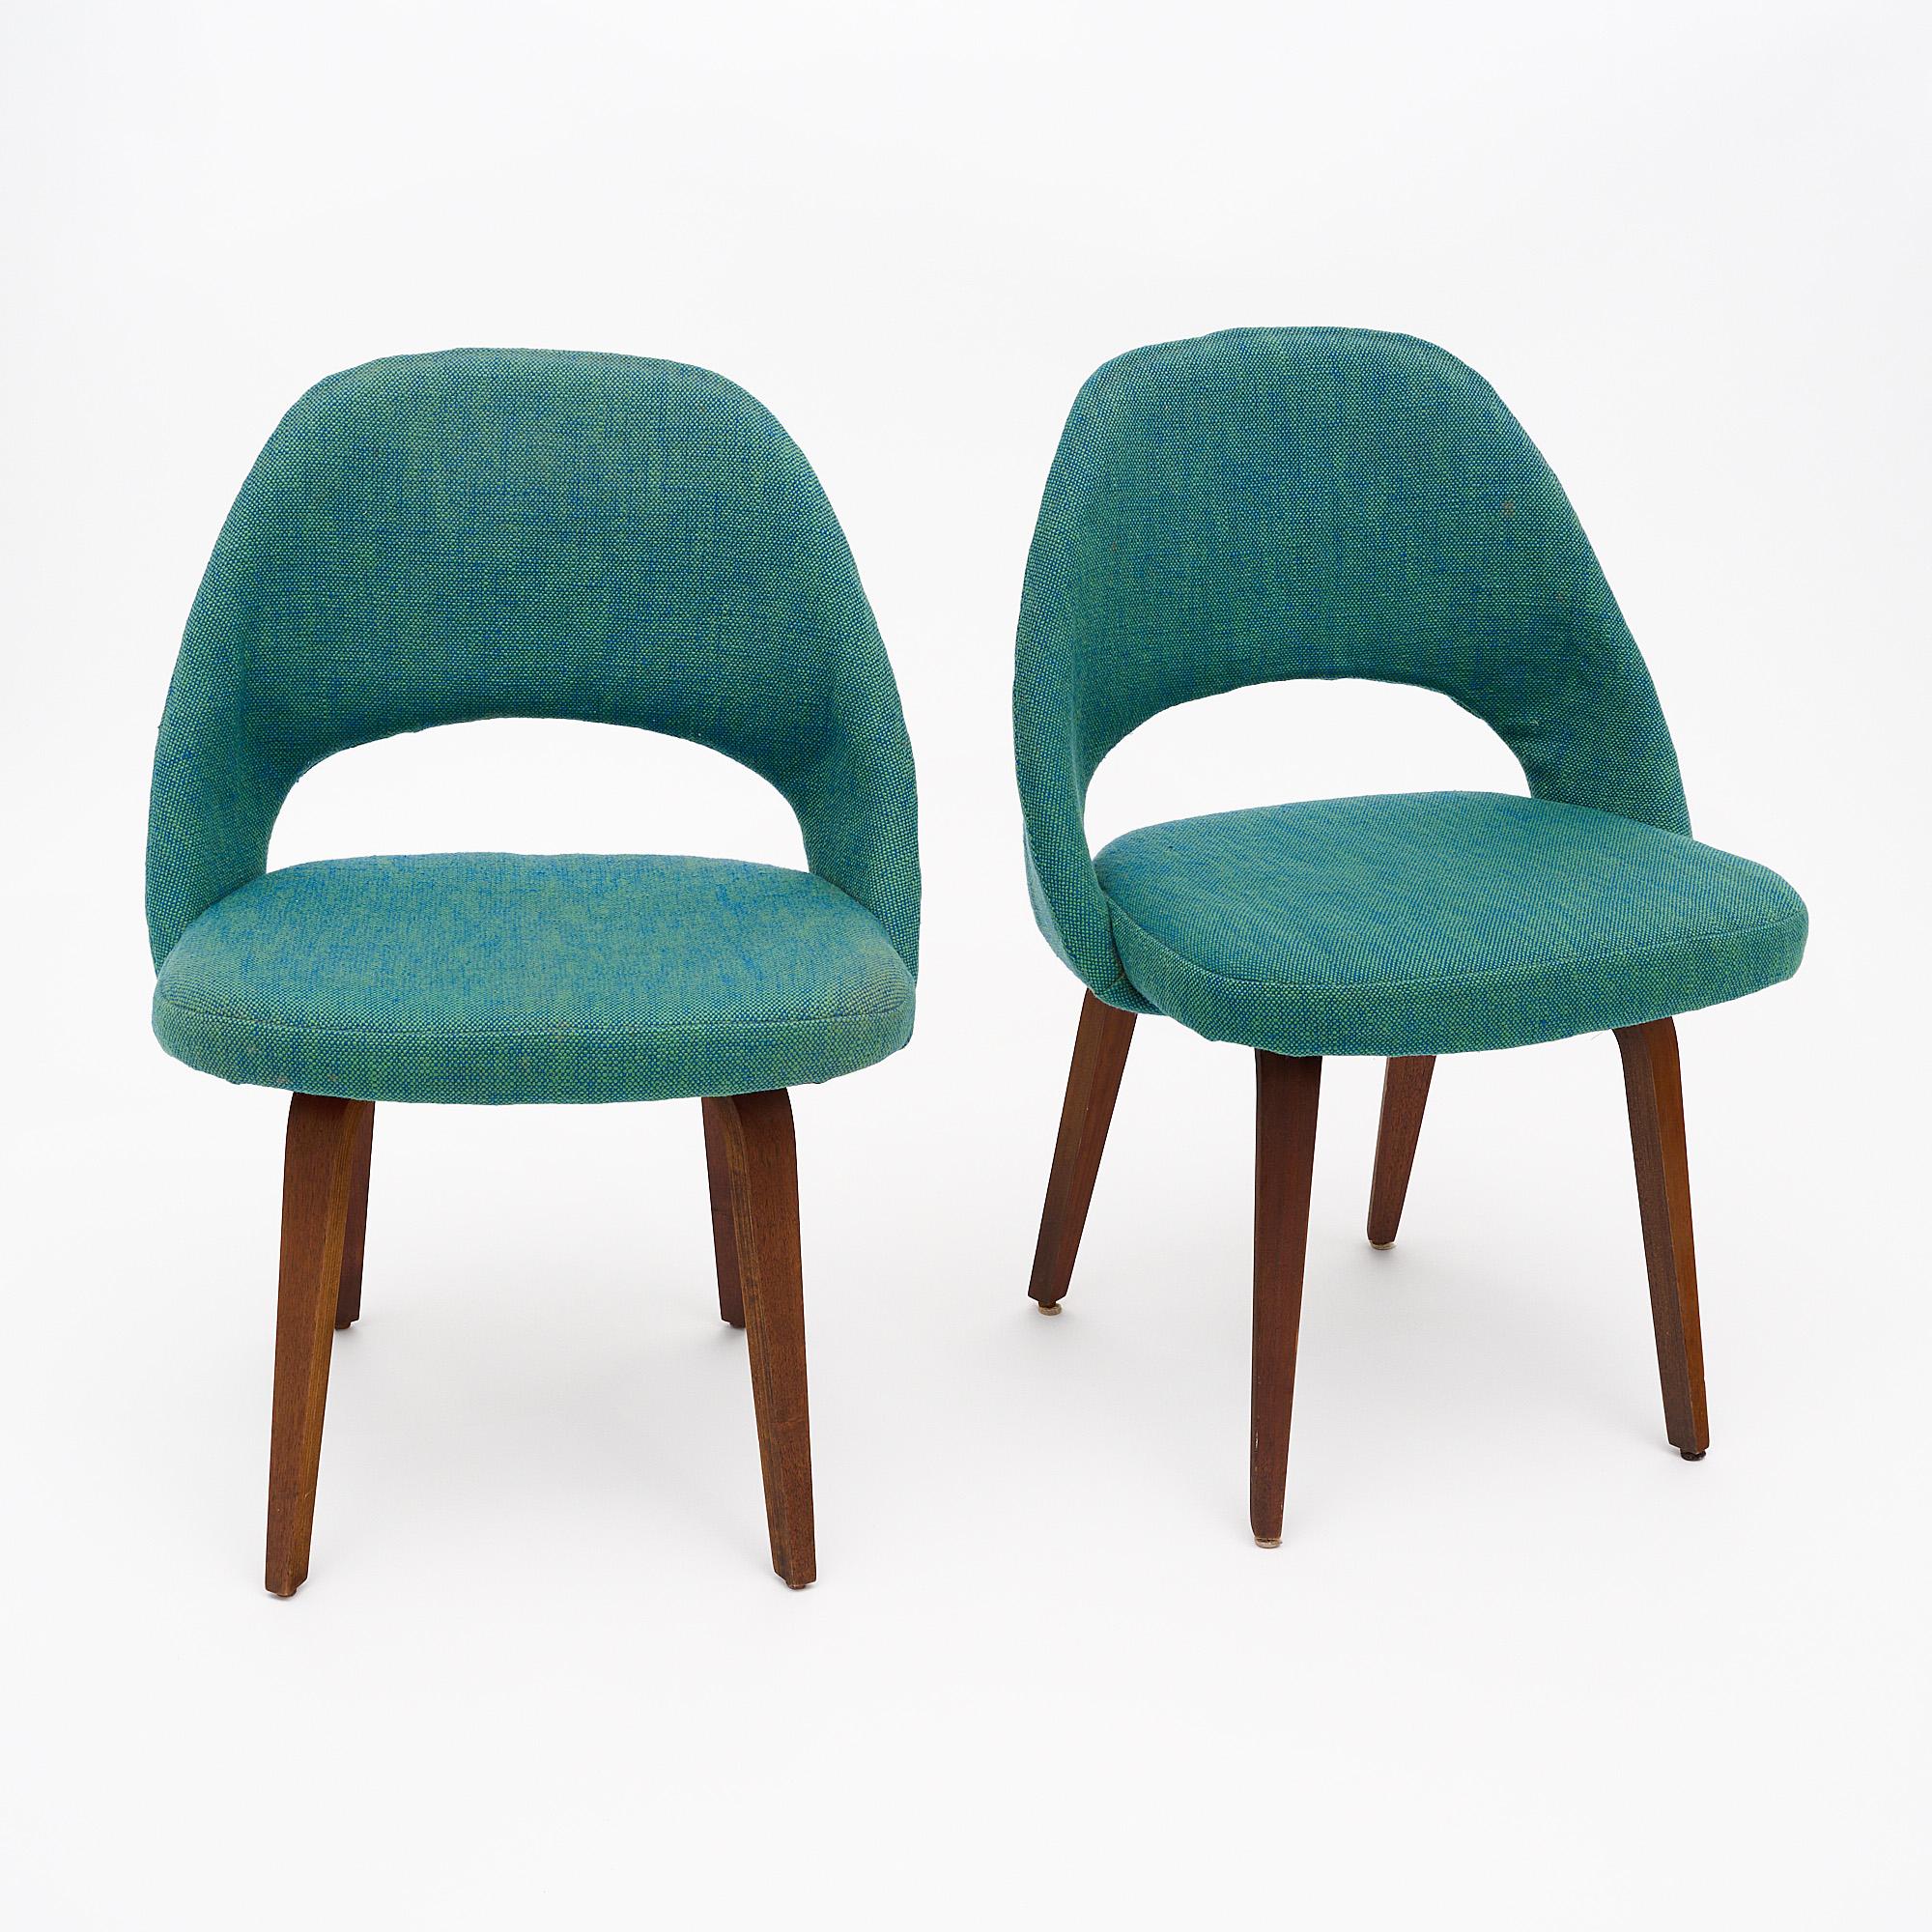 Paire de chaises par Condit avec tissu d'origine vert et bleu en bon état. Présente à l'origine dans presque tous les intérieurs de Florence Knoll, la chaise de direction Sarrinen est restée un modèle populaire. Les pieds sont en noyer. Une fois la